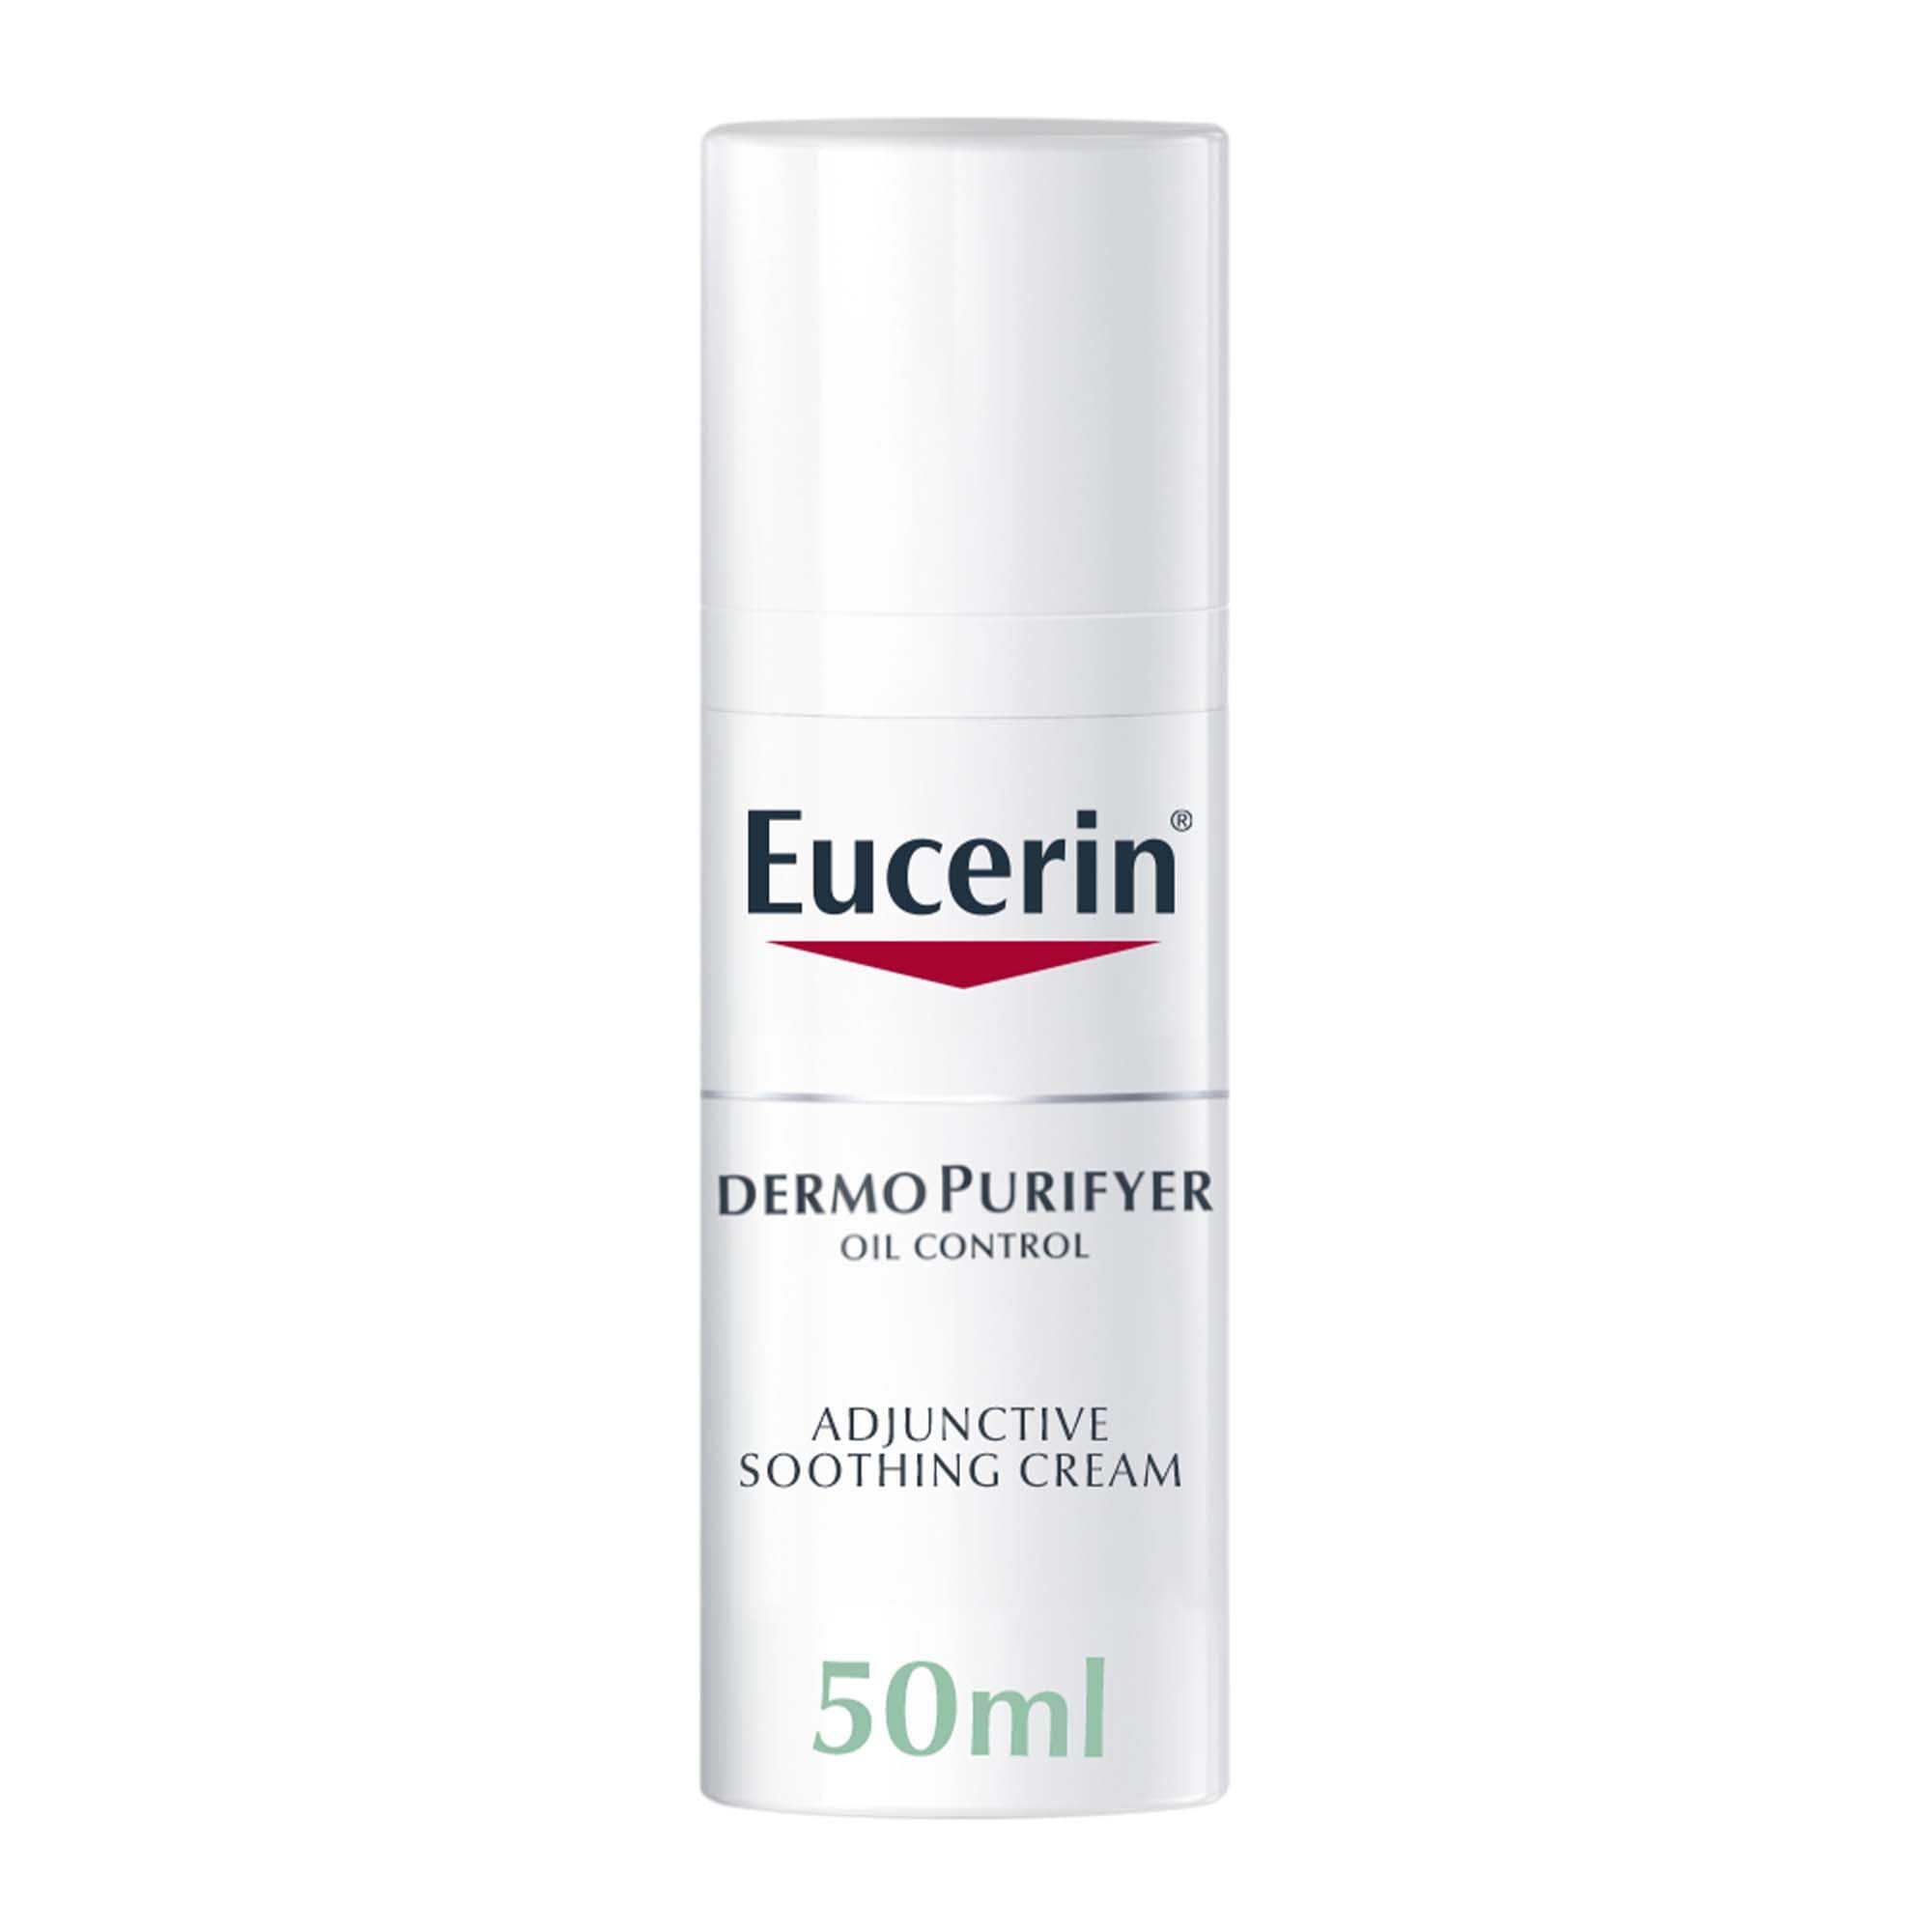 Eucerin DermoPurifyer Adjunctive Soothing Cream, 50ml